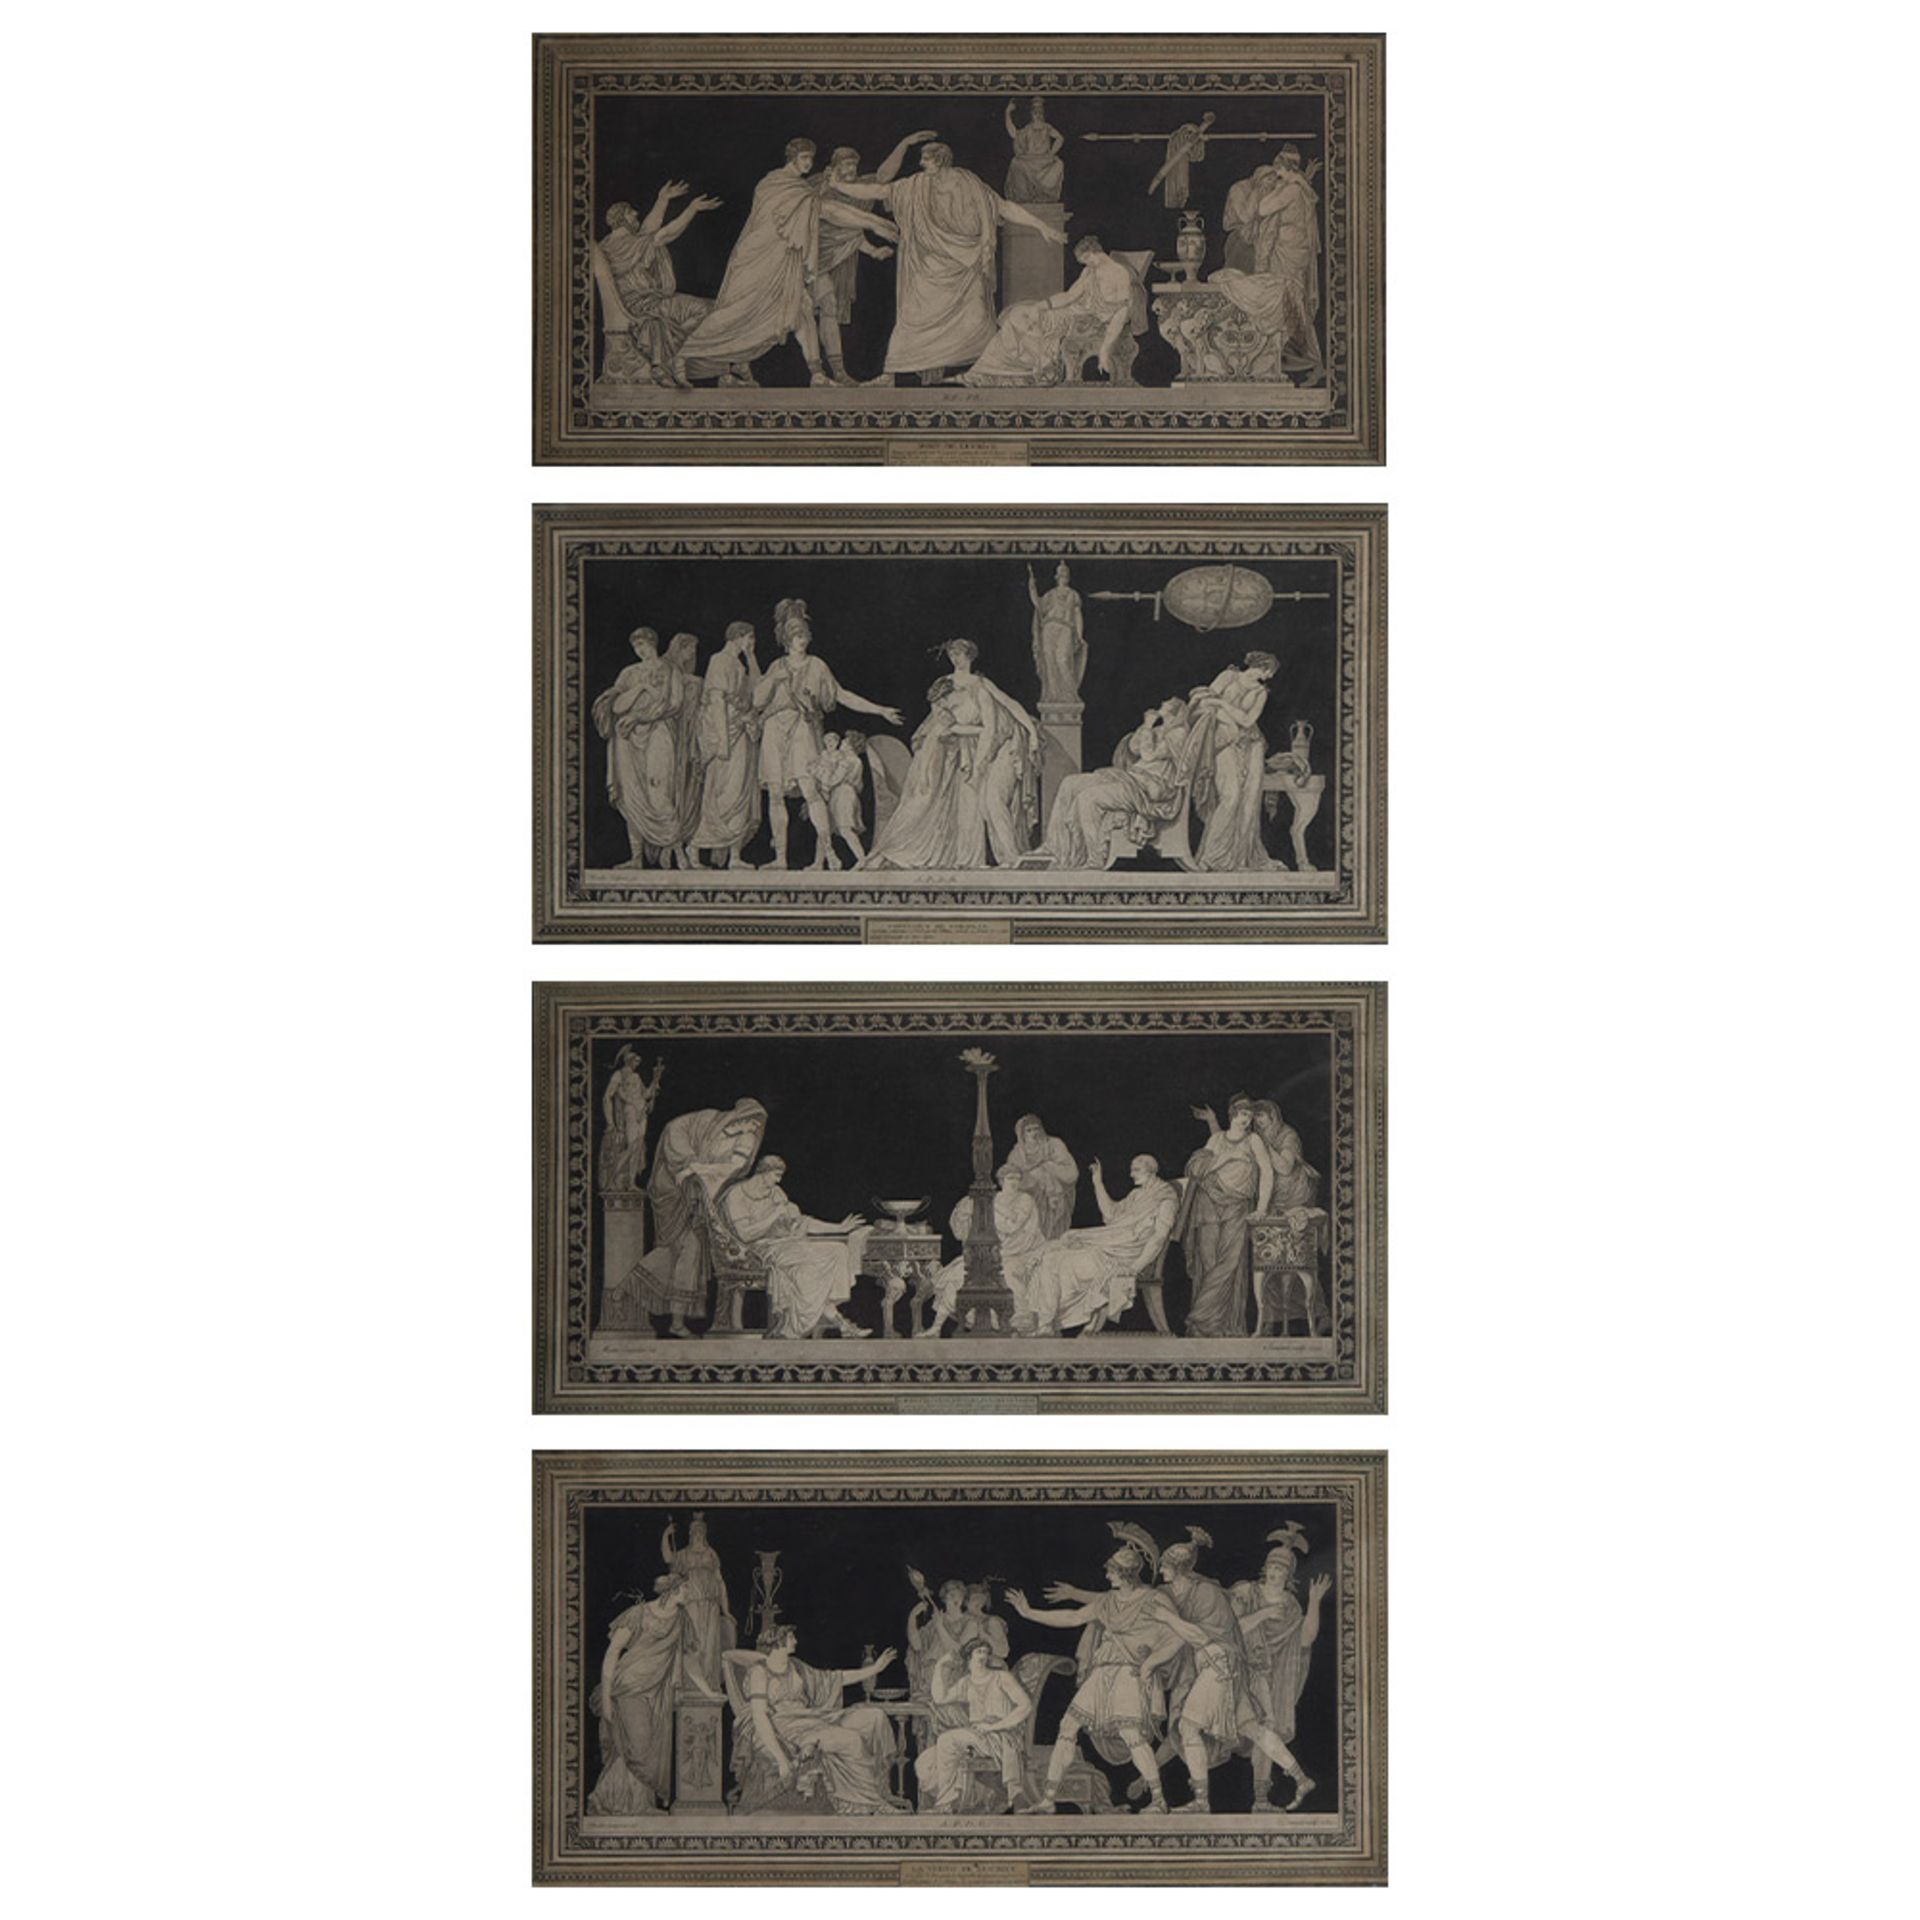 Jean-François JANINET (1752-1814), set of 4 etchings/aquatint Mort de Lucrèce, La Vertu de Lucrèce,